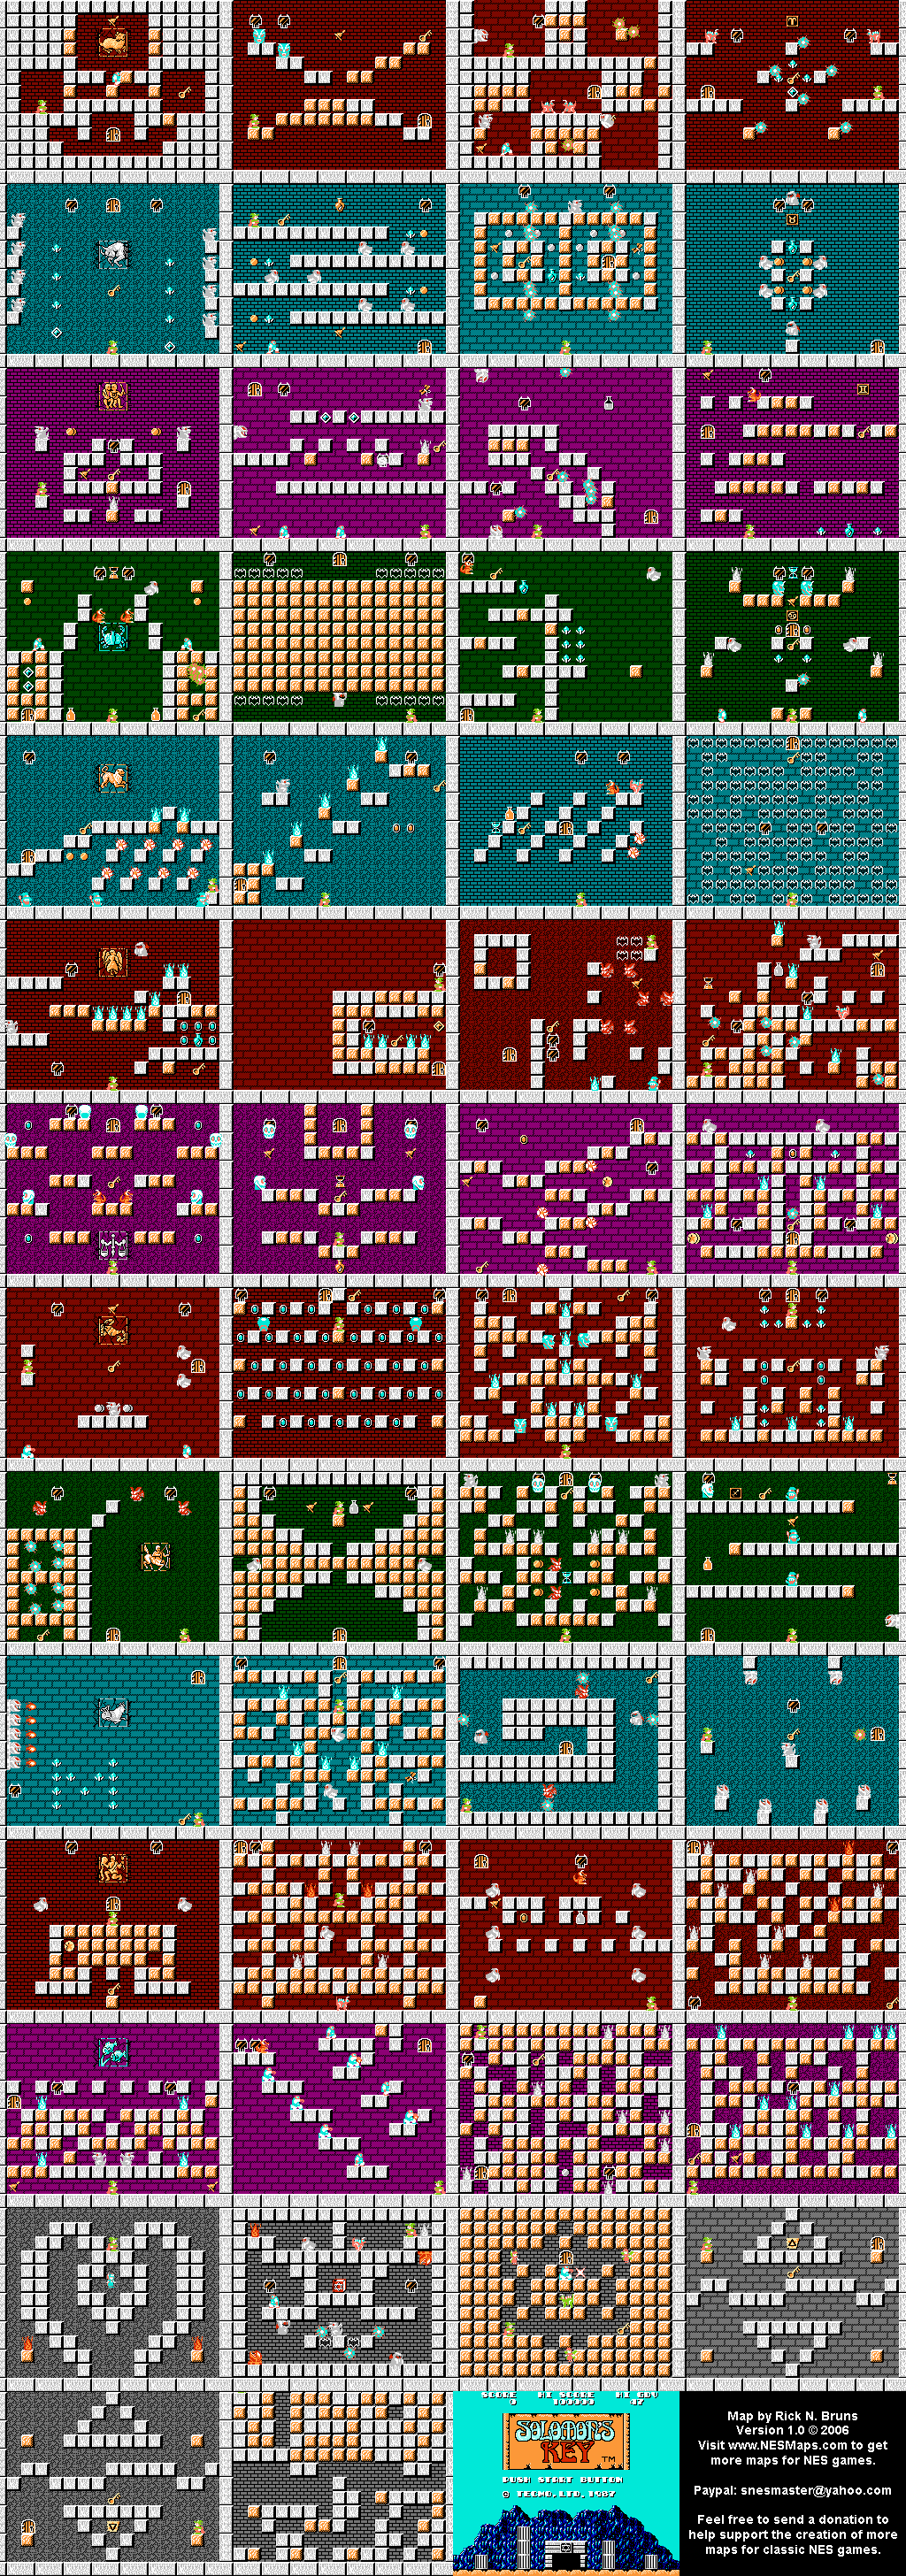 Solomon's Key - NES Map